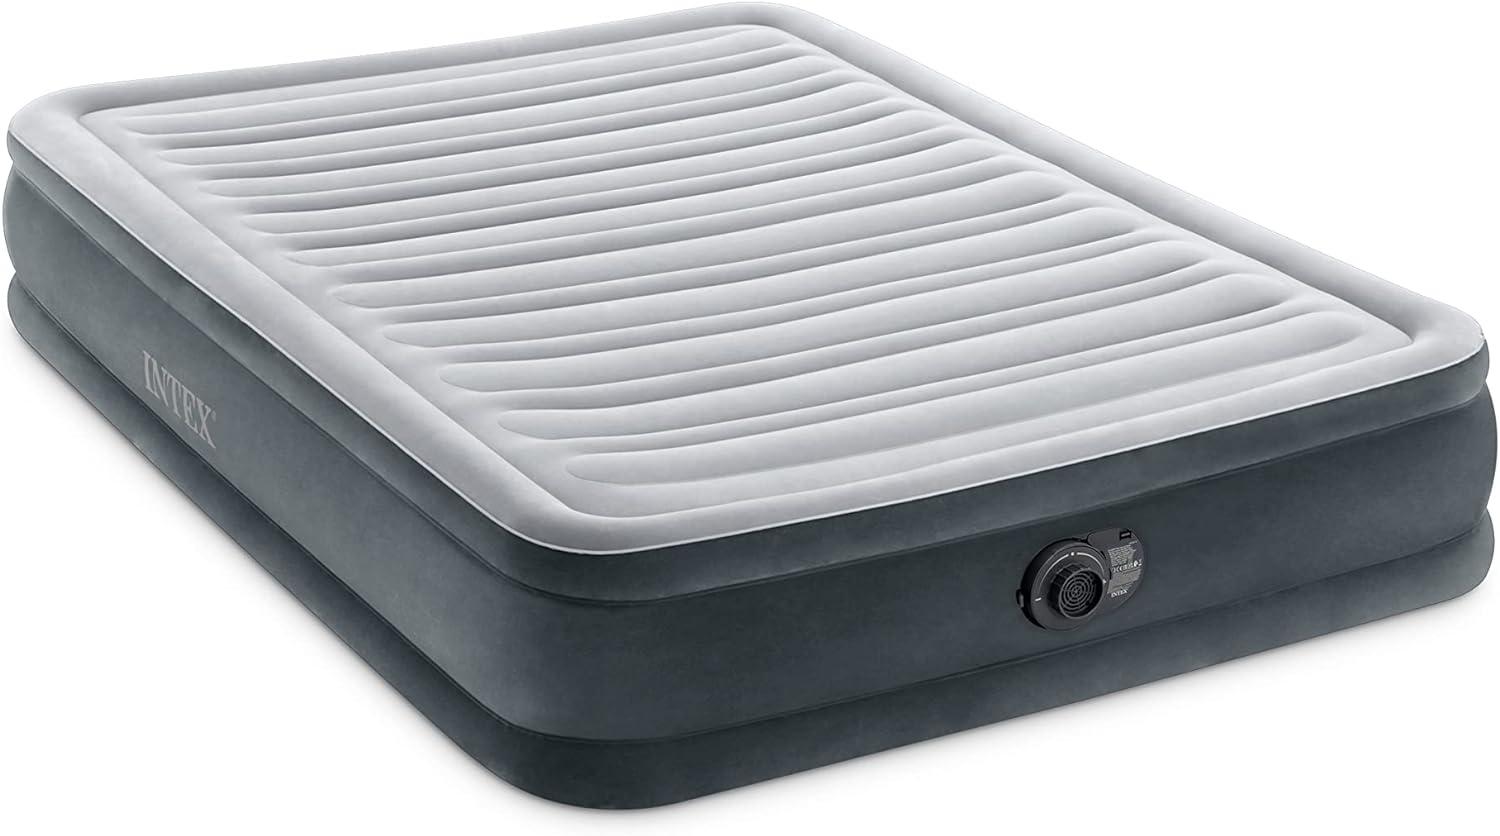 Intex Full Comfort-Plush Luftbett mit Fiber-Tech RP, aufgeblasene Größe: 137 cm x 191 cm x 33 cm (67768ND) Bild 1